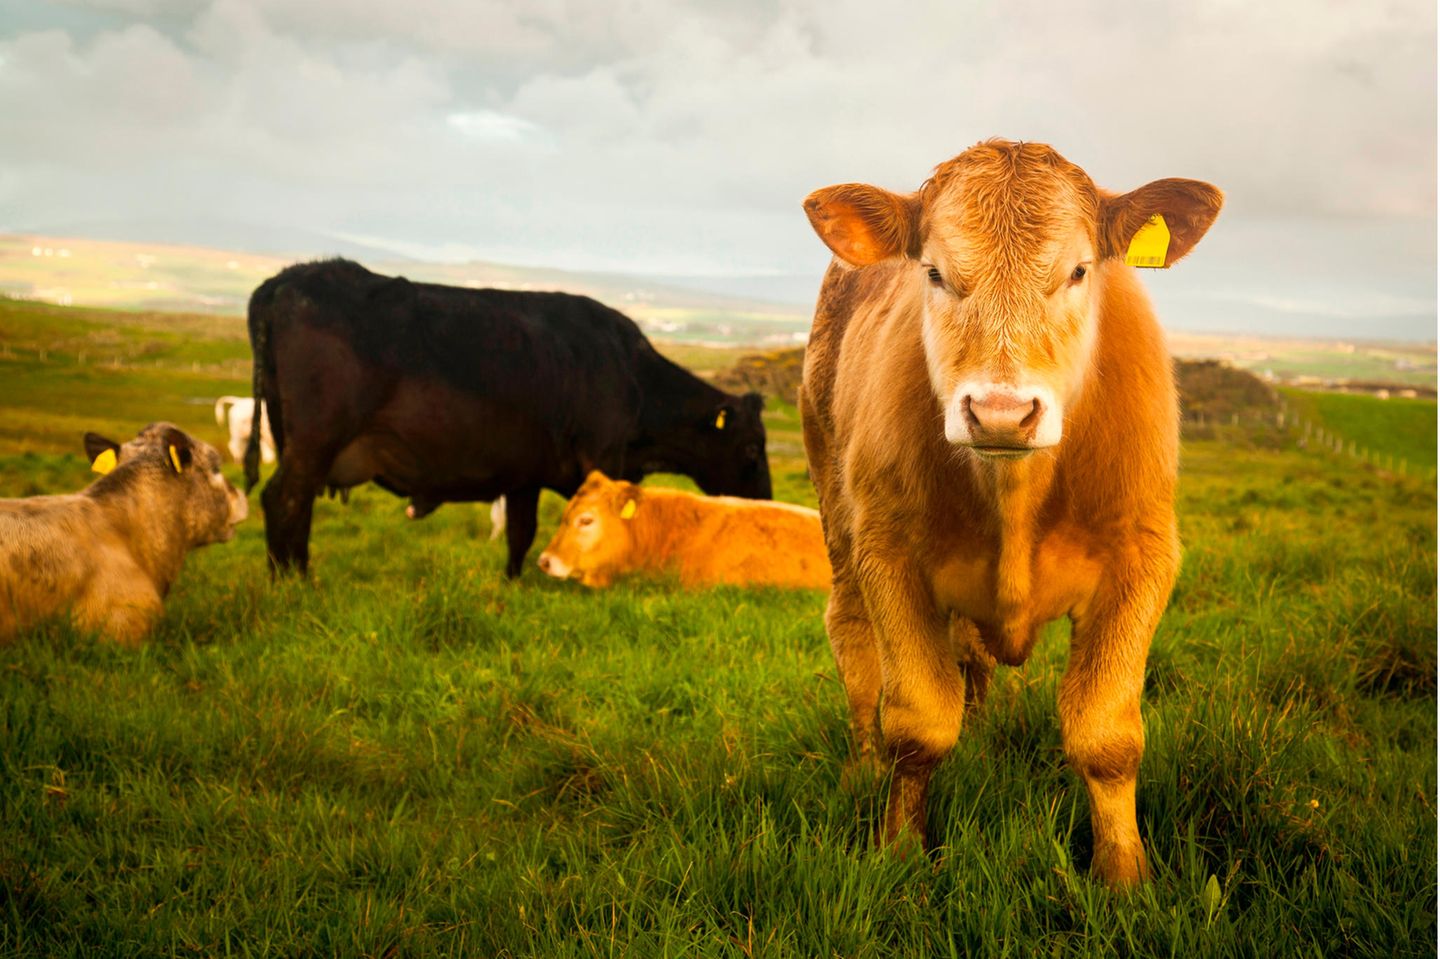 Um die Klimaschutzziele zu erreichen, schlägt das Landwirtschaftsministerium in Dublin vor, 200.000 Kühe zu töten